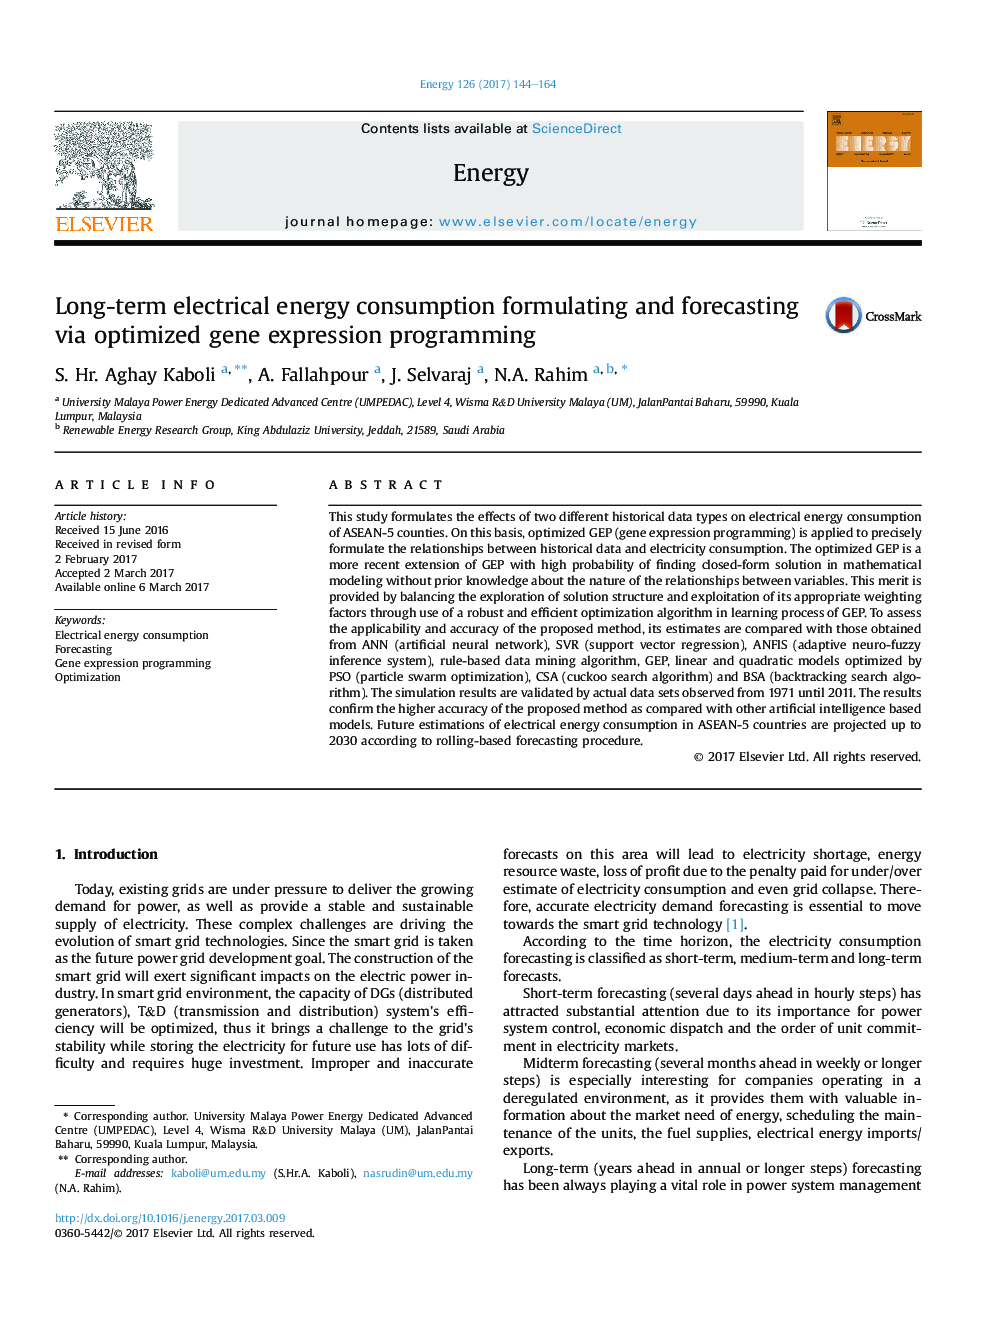 فرمولاسیون و پیش بینی مصرف انرژی برق درازمدت از طریق برنامه ریزی بیان ژن بهینه شده است 